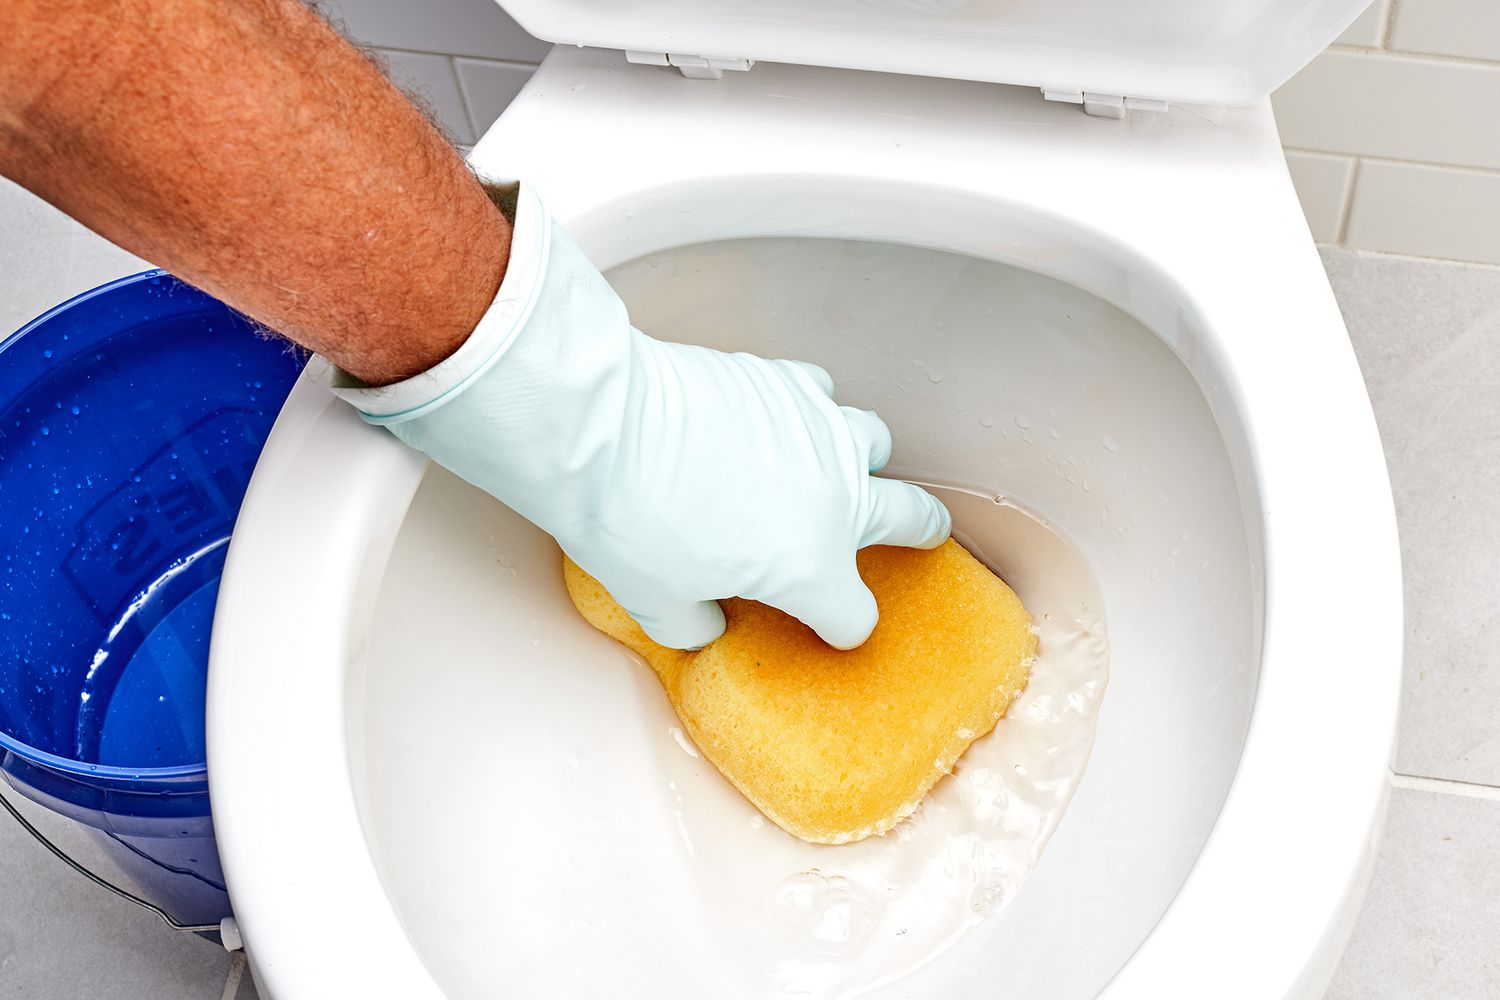 Toilette en cours de vidange avec une éponge jaune absorbant l'eau